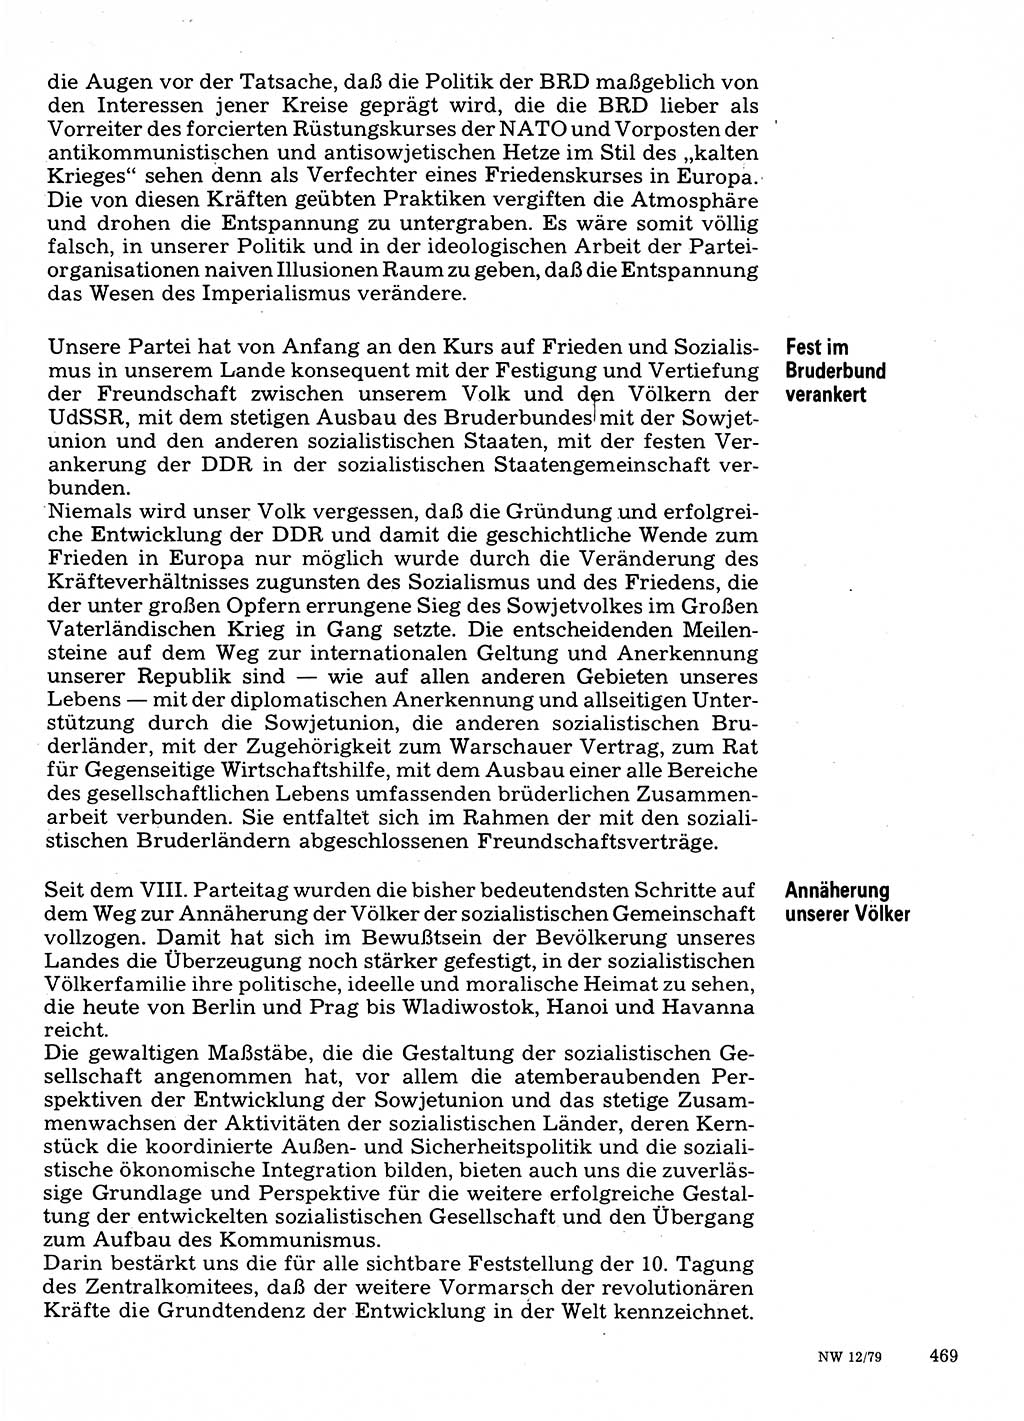 Neuer Weg (NW), Organ des Zentralkomitees (ZK) der SED (Sozialistische Einheitspartei Deutschlands) für Fragen des Parteilebens, 34. Jahrgang [Deutsche Demokratische Republik (DDR)] 1979, Seite 469 (NW ZK SED DDR 1979, S. 469)